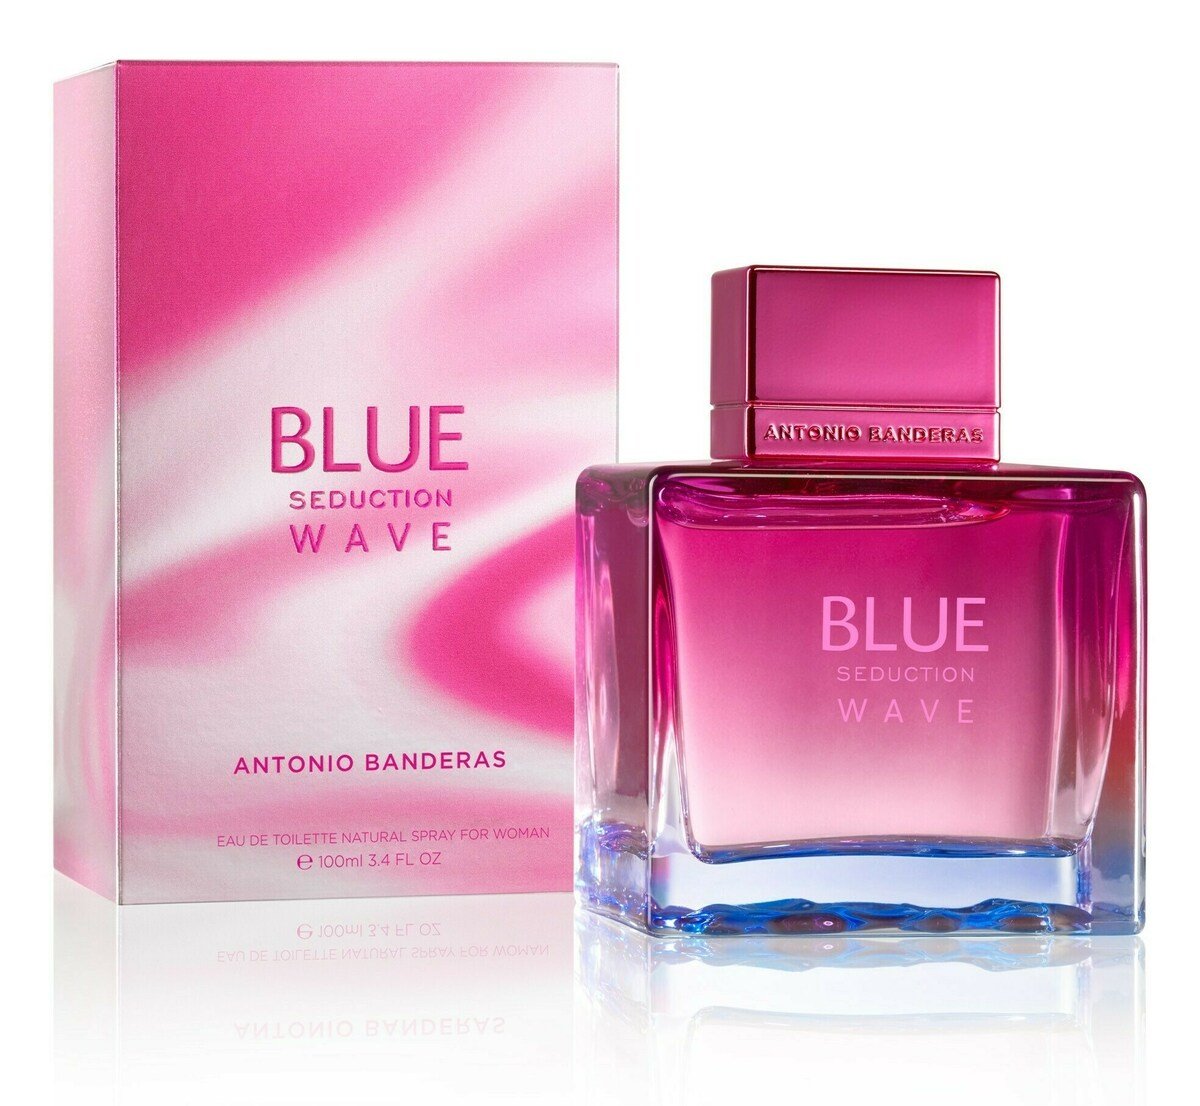 Blue Seduction Wave for Woman